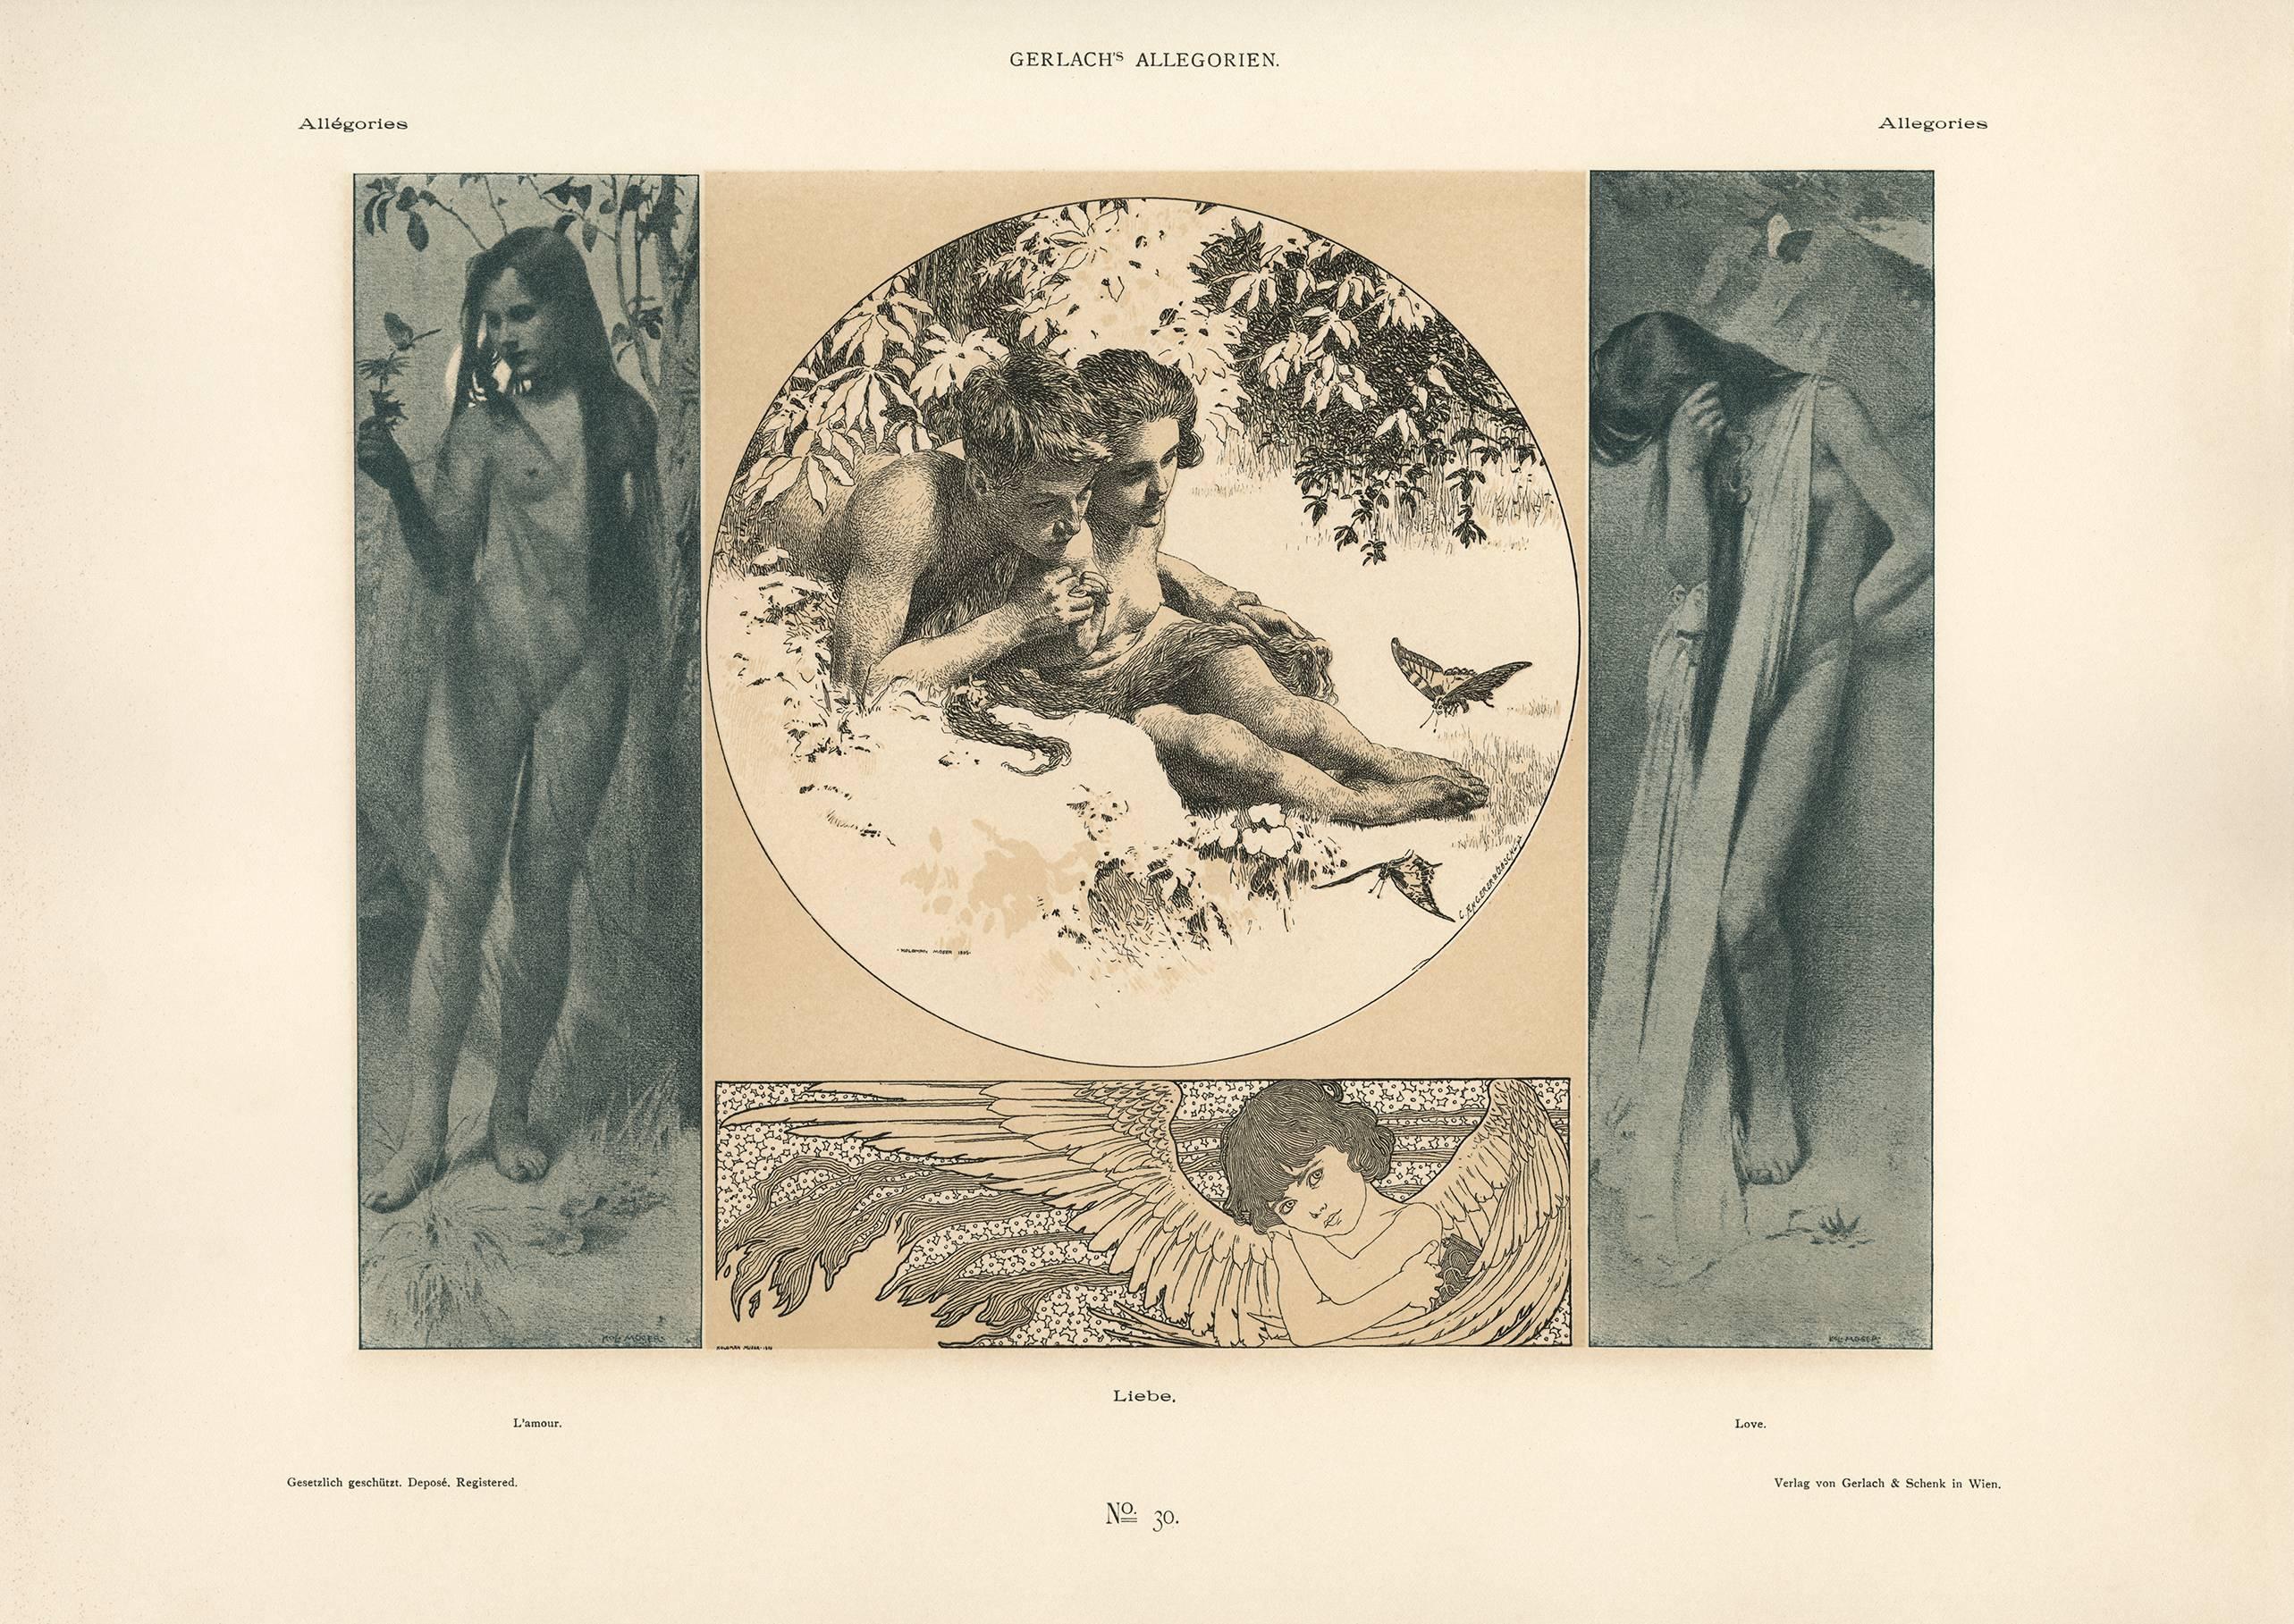 Gerlach's Allegorien Plate #30: "Love" Lithograph